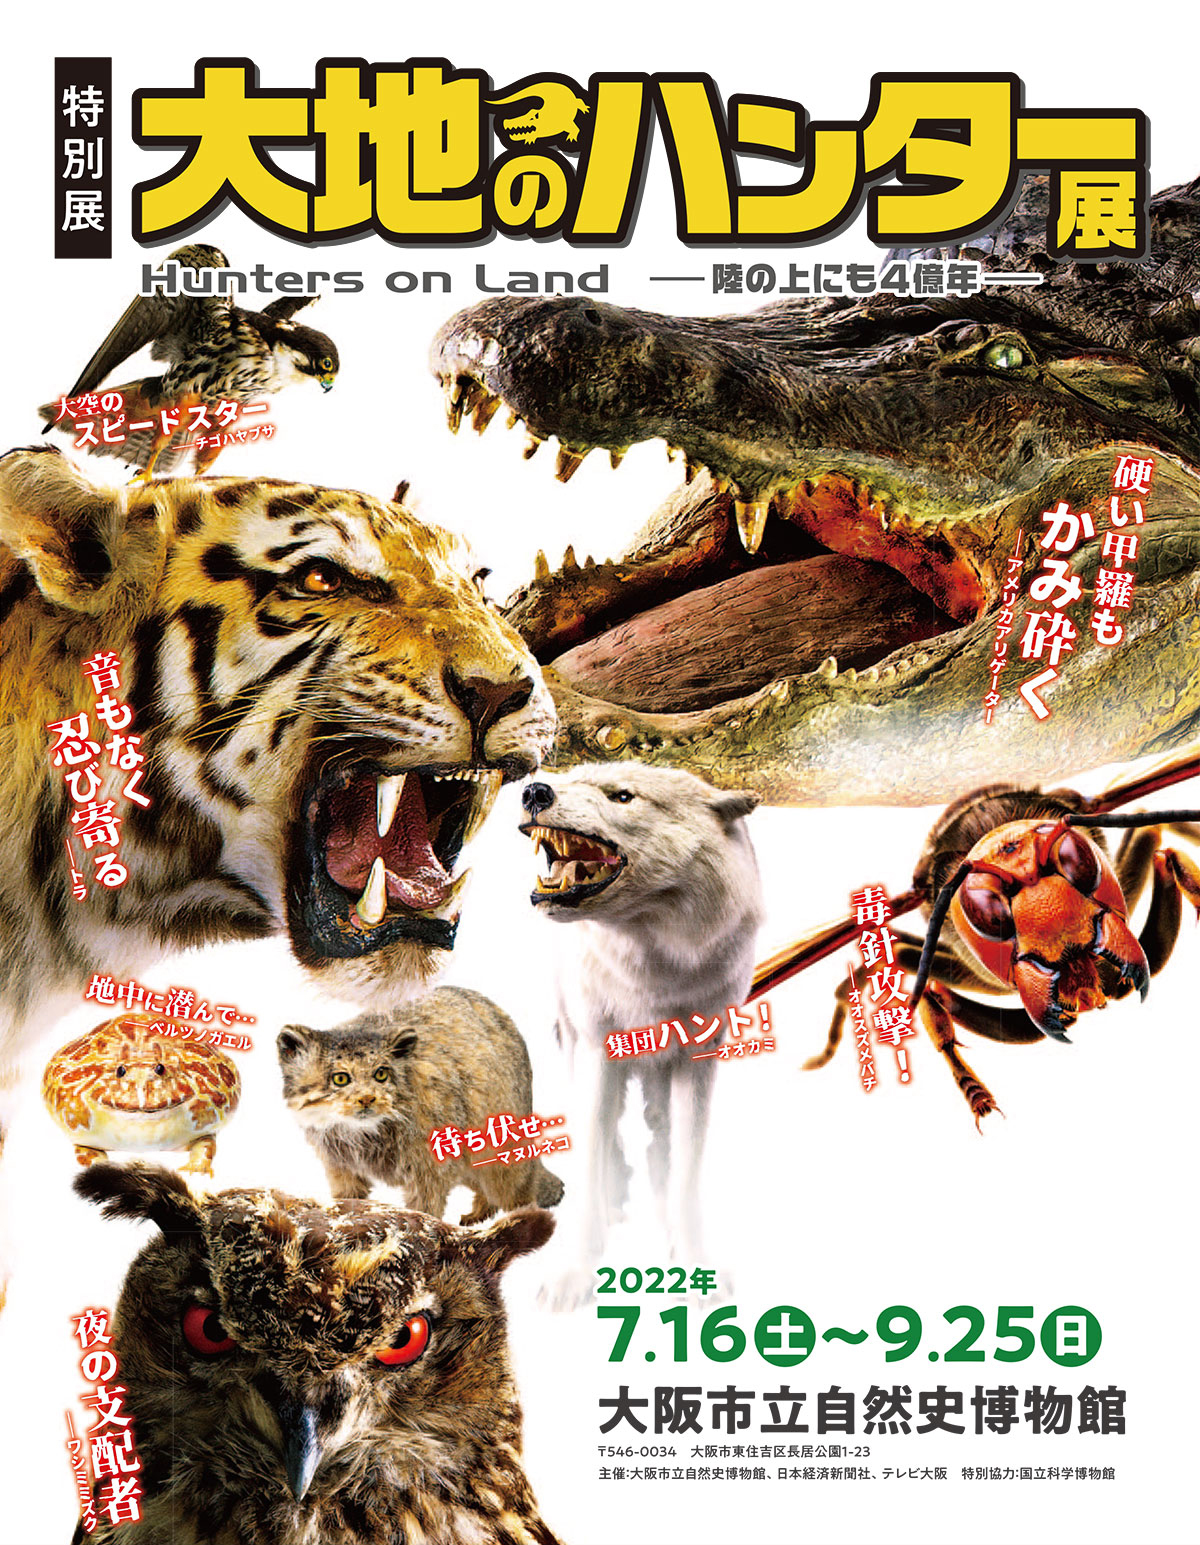 特別展「大地のハンター展」 Hunters On Land -陸の上にも4億年- 2022年7.16(土)～9.25(土) 大阪市立自然史博物館